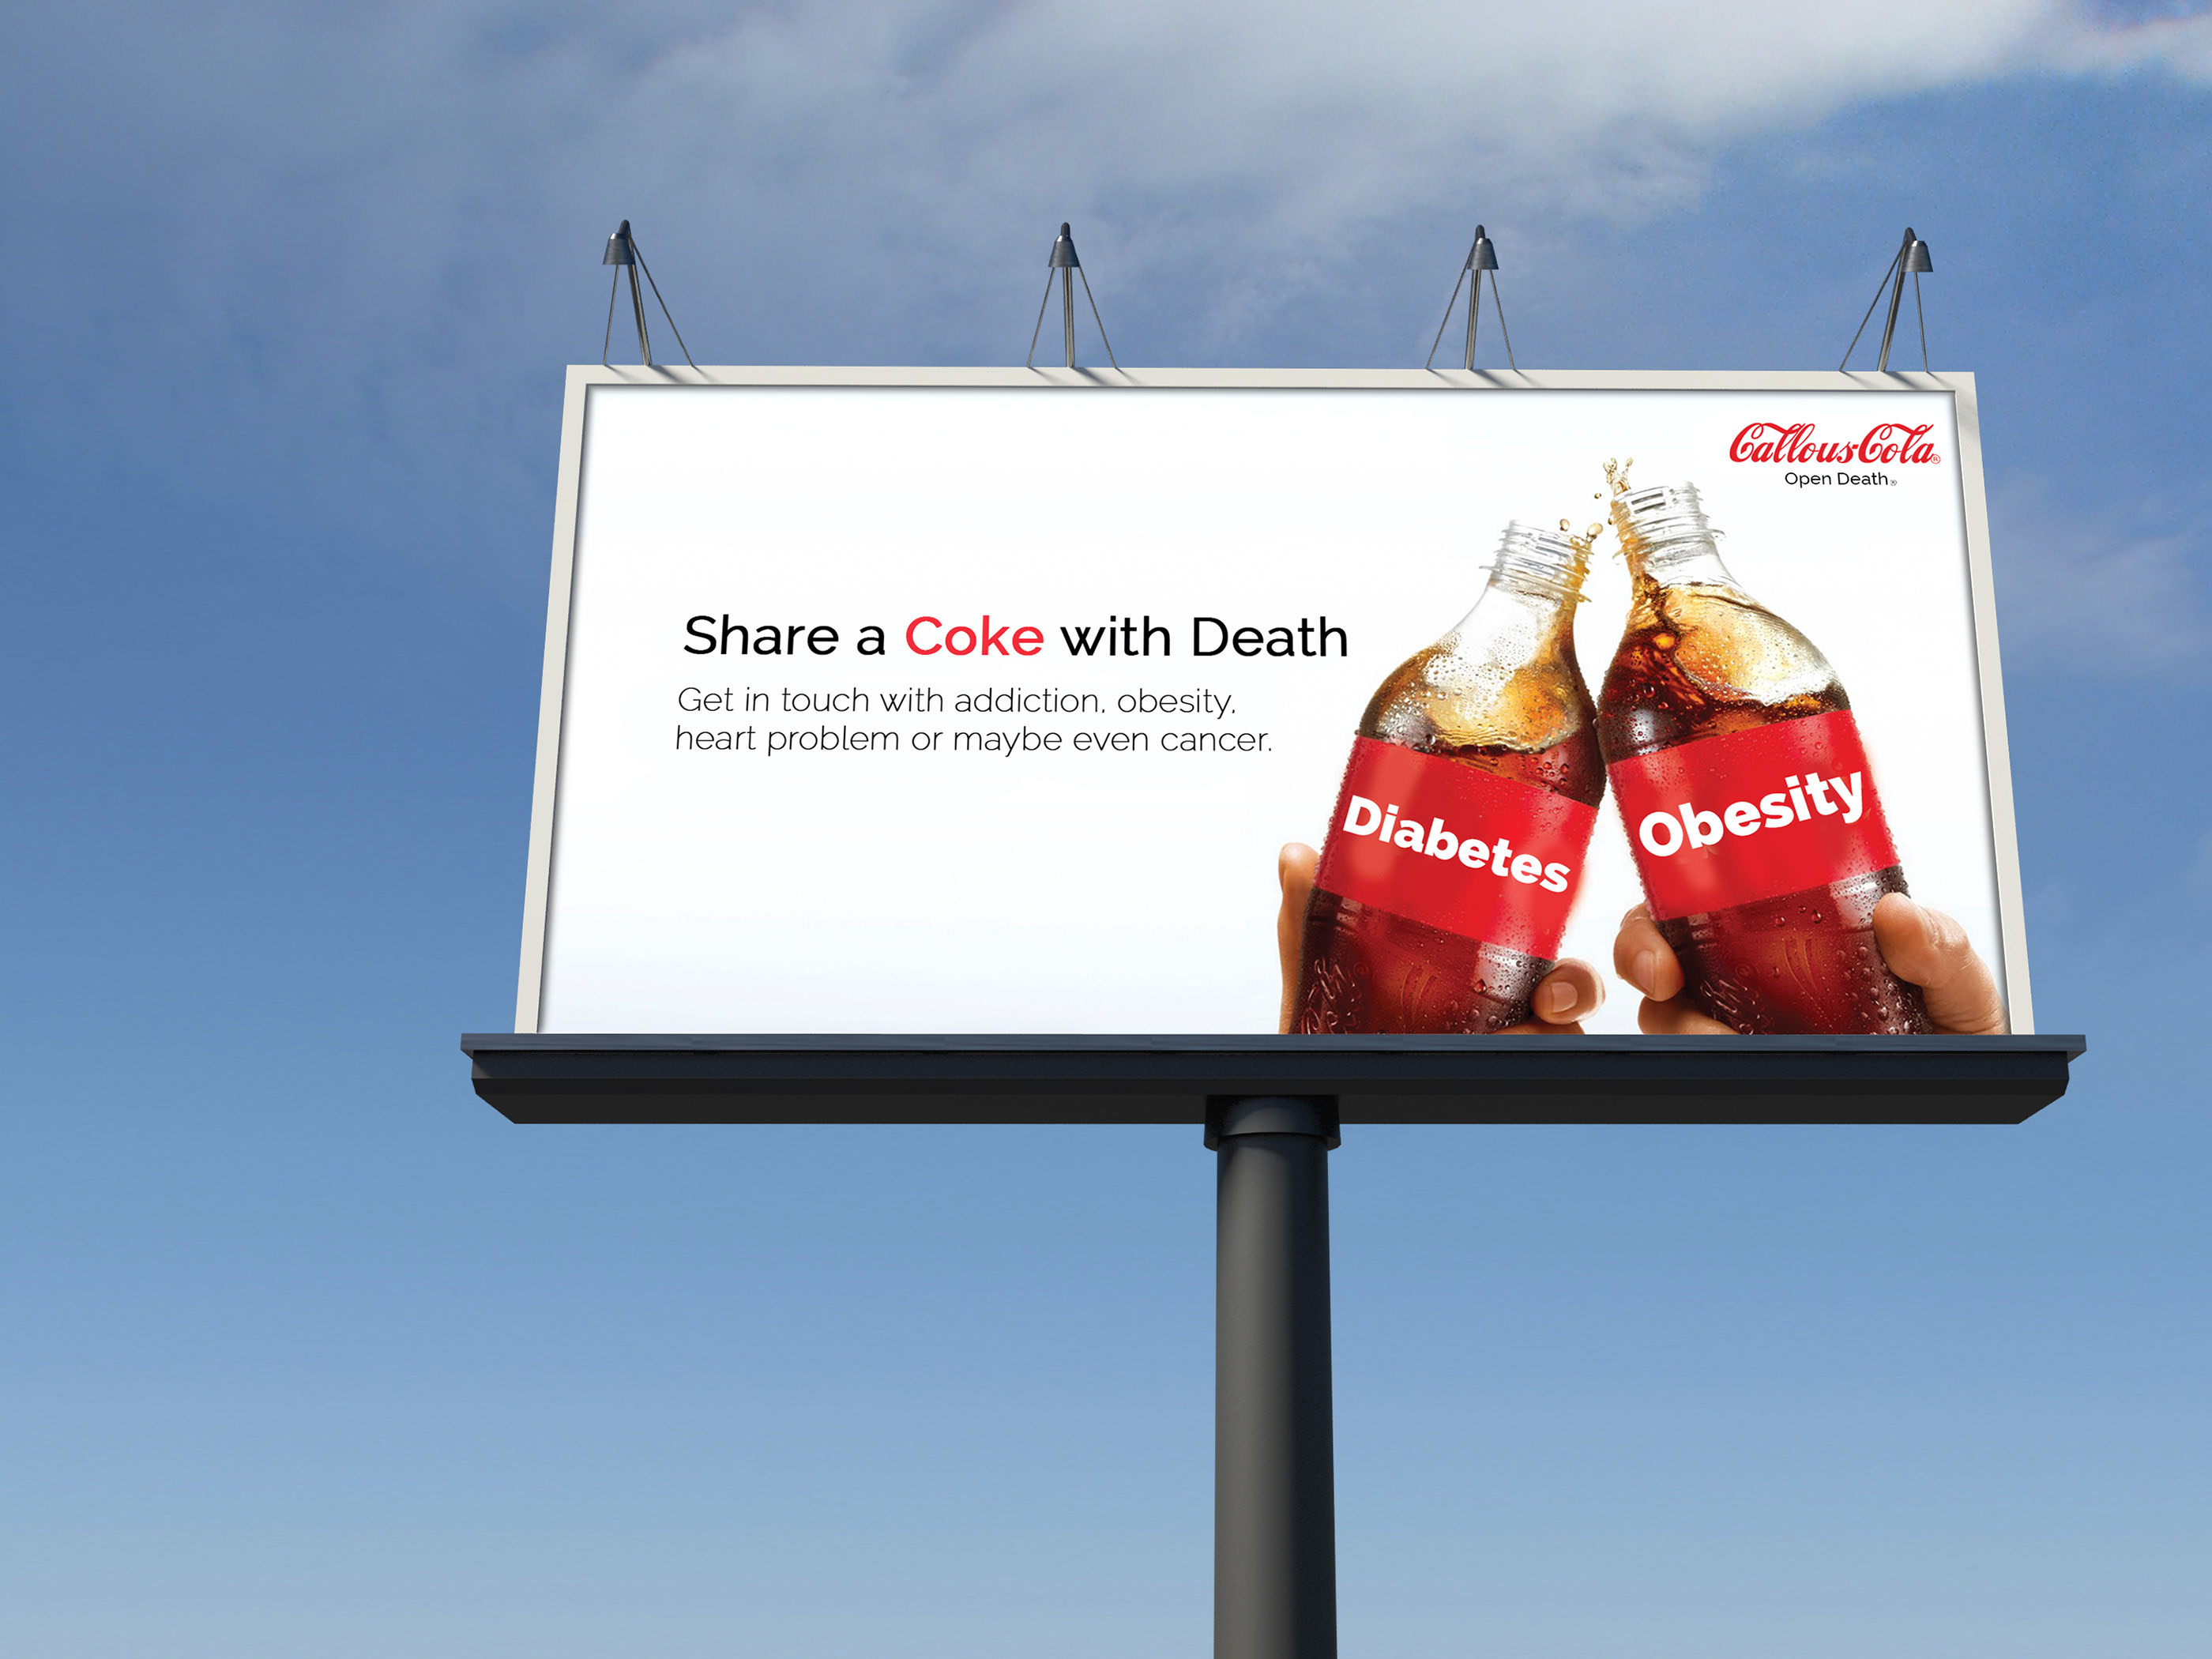 Promotion campaign. Coca Cola Advert. Share a Coke Coca-Cola реклама. Coca Cola advertisement. Coca Cola реклама баннер.